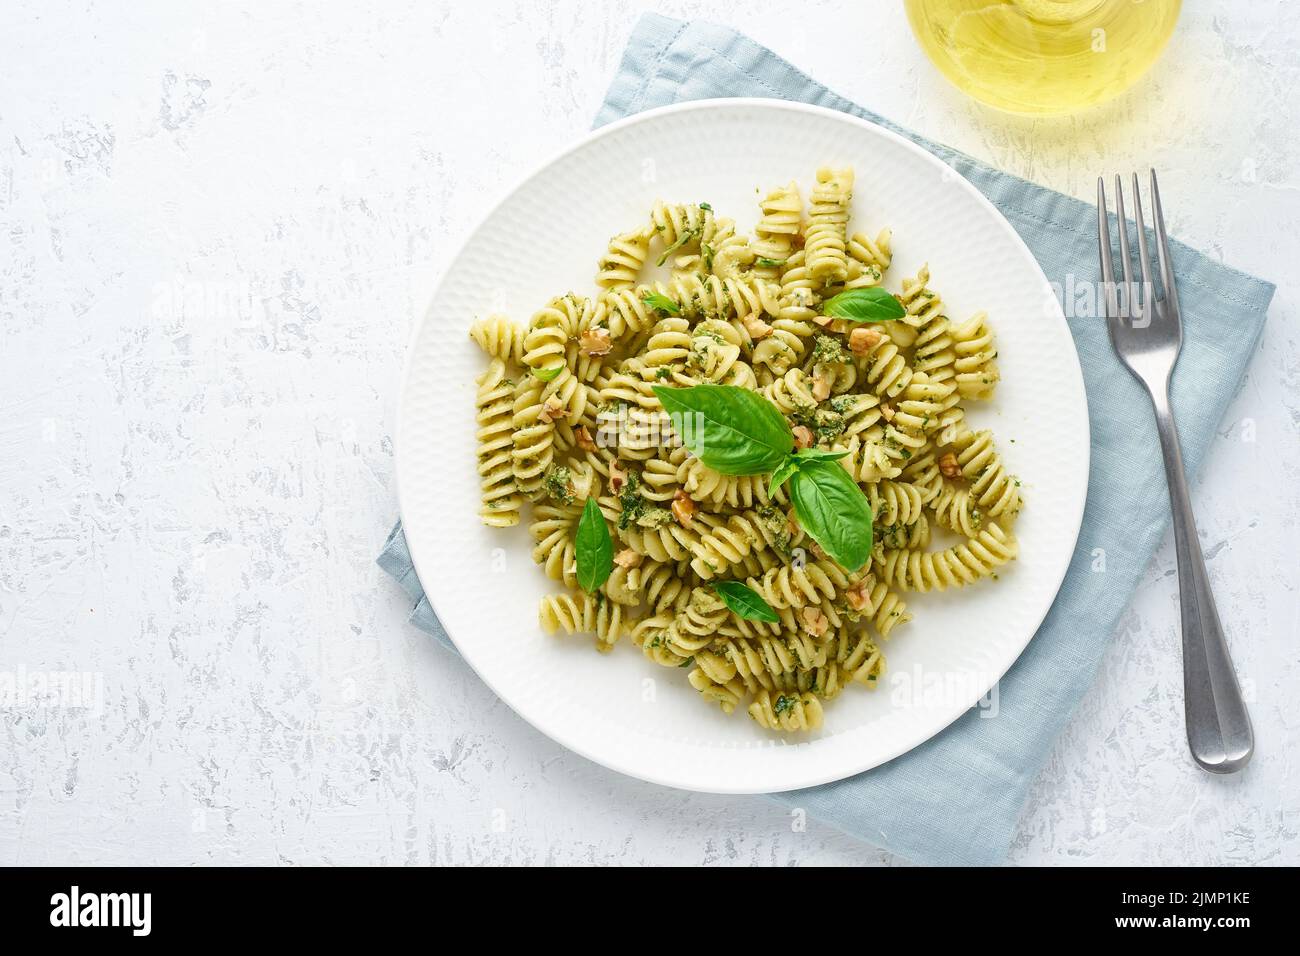 Fusili pasta con pesto di basilico ed erbe aromatiche, cucina italiana, sfondo in pietra grigia, vista dall'alto Foto Stock